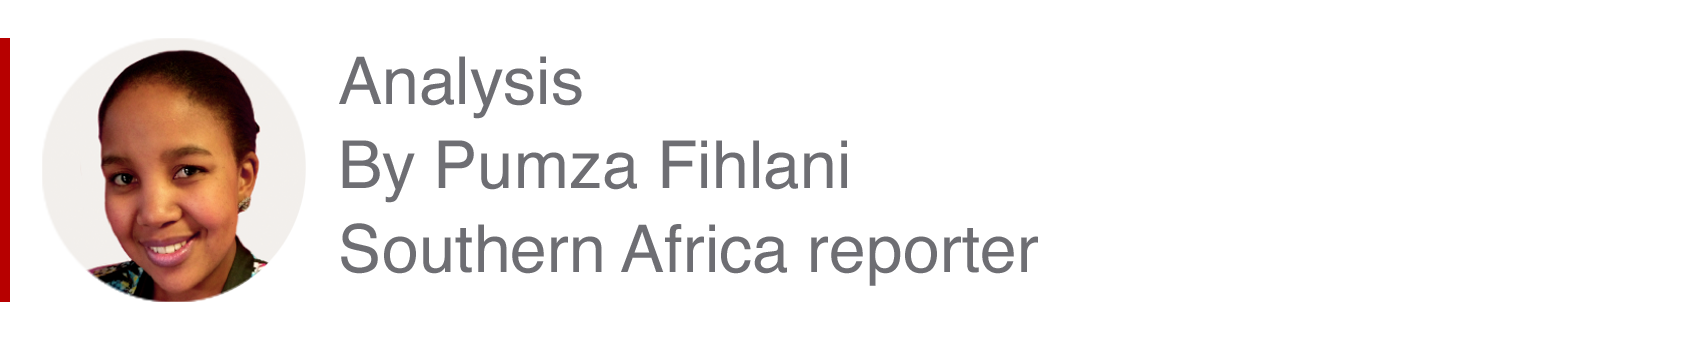 Аналитический бокс Пумзы Фихлани, репортера из Южной Африки